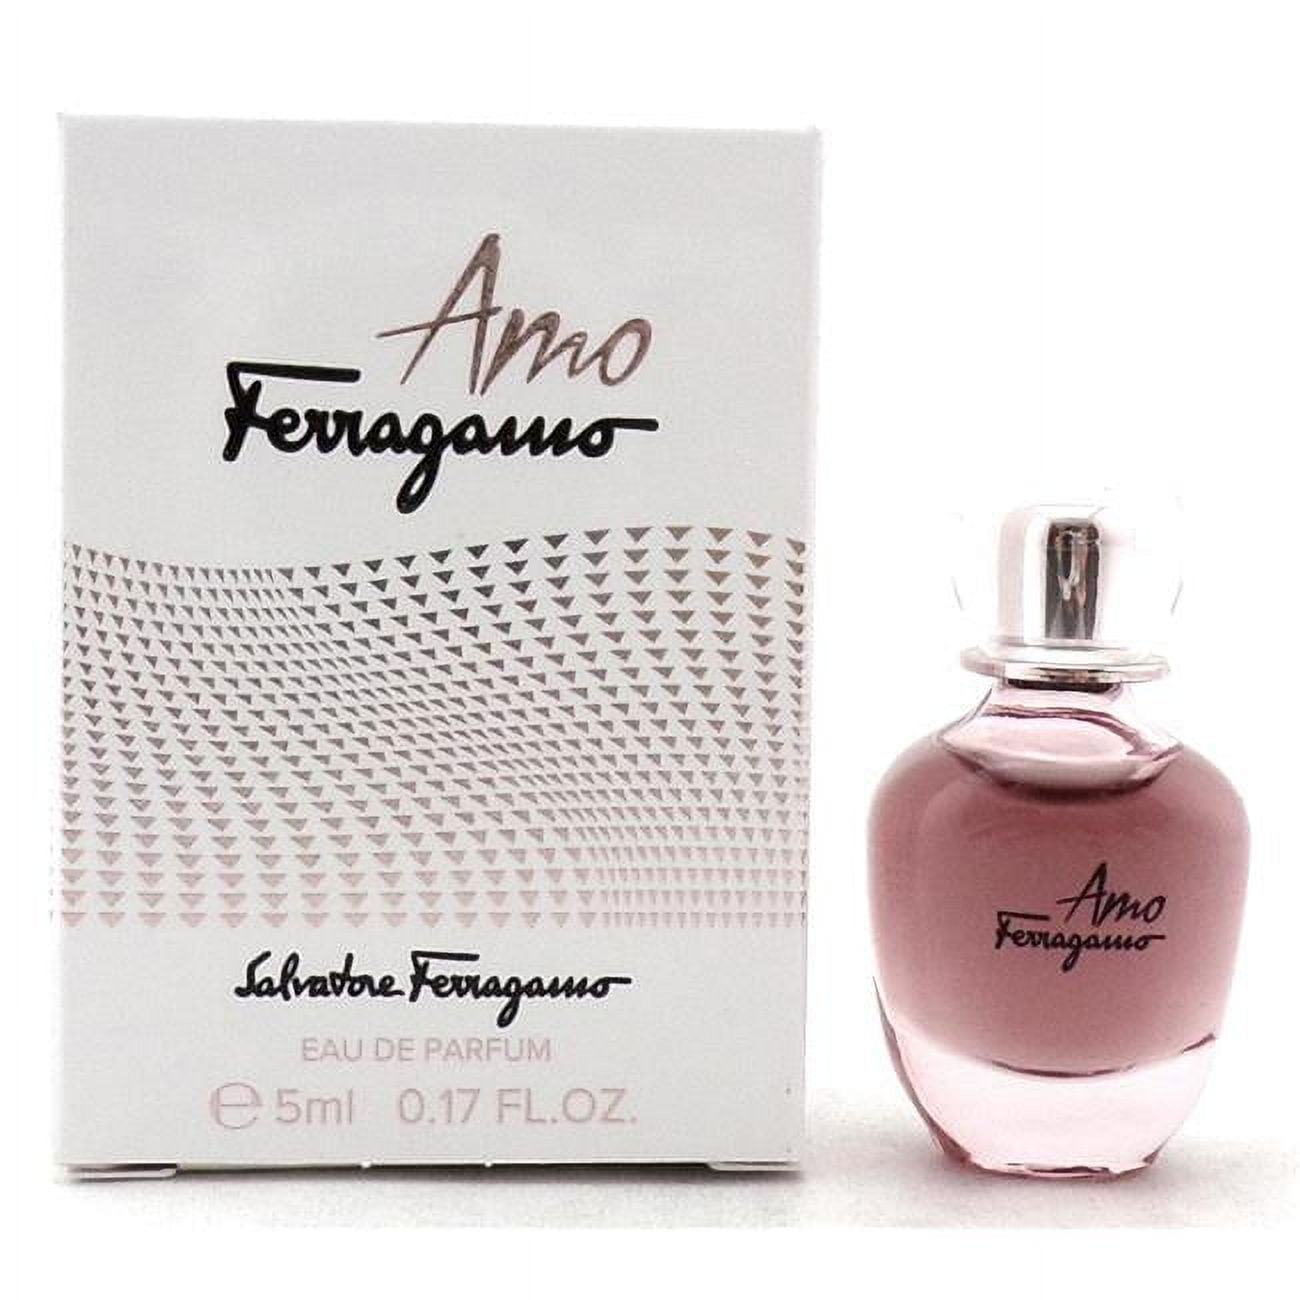 AMO * Salvatore Ferragamo 0.17 oz / 5 ml Miniature EDP Women Perfume Splash | Eau de Parfum